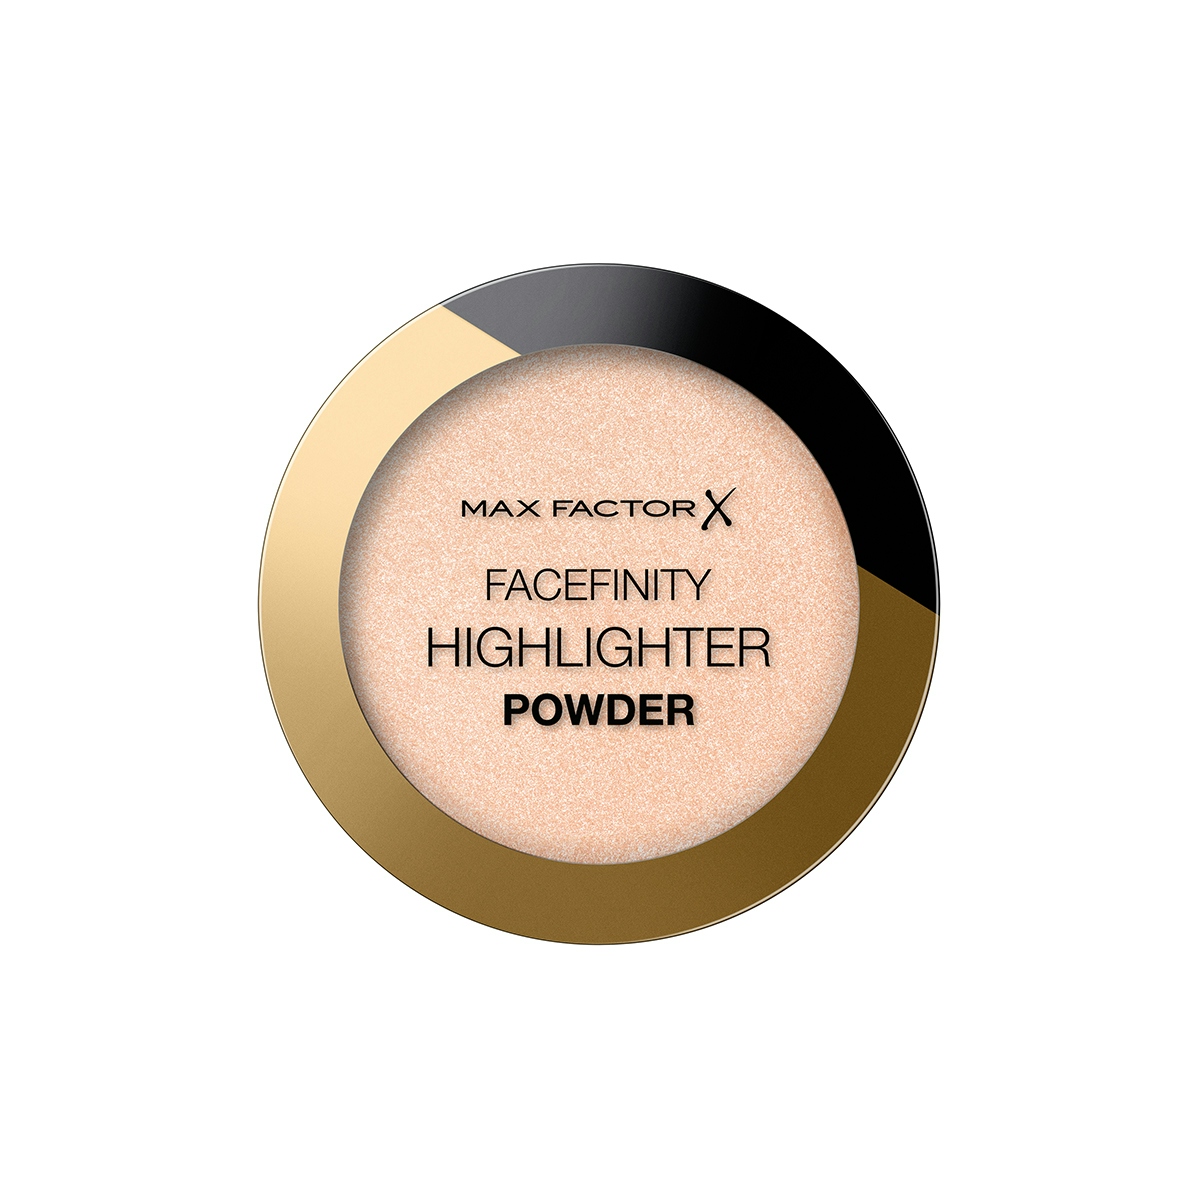 Iluminador Facefinity Highlighter powder 01 MAX FACTOR 1 ud